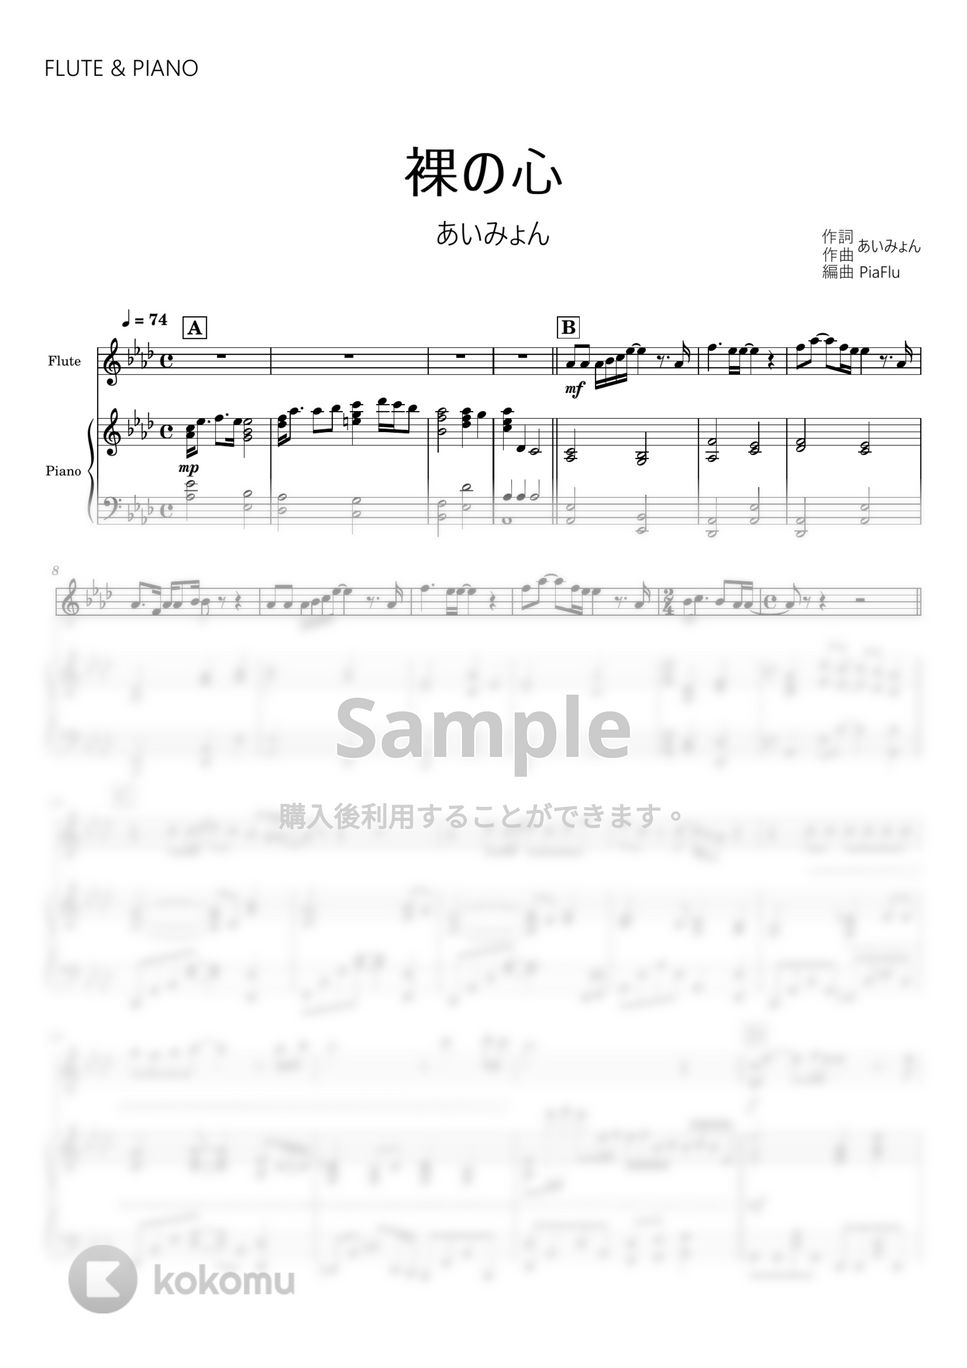 あいみょん - 裸の心 (フルート&ピアノ伴奏) by PiaFlu